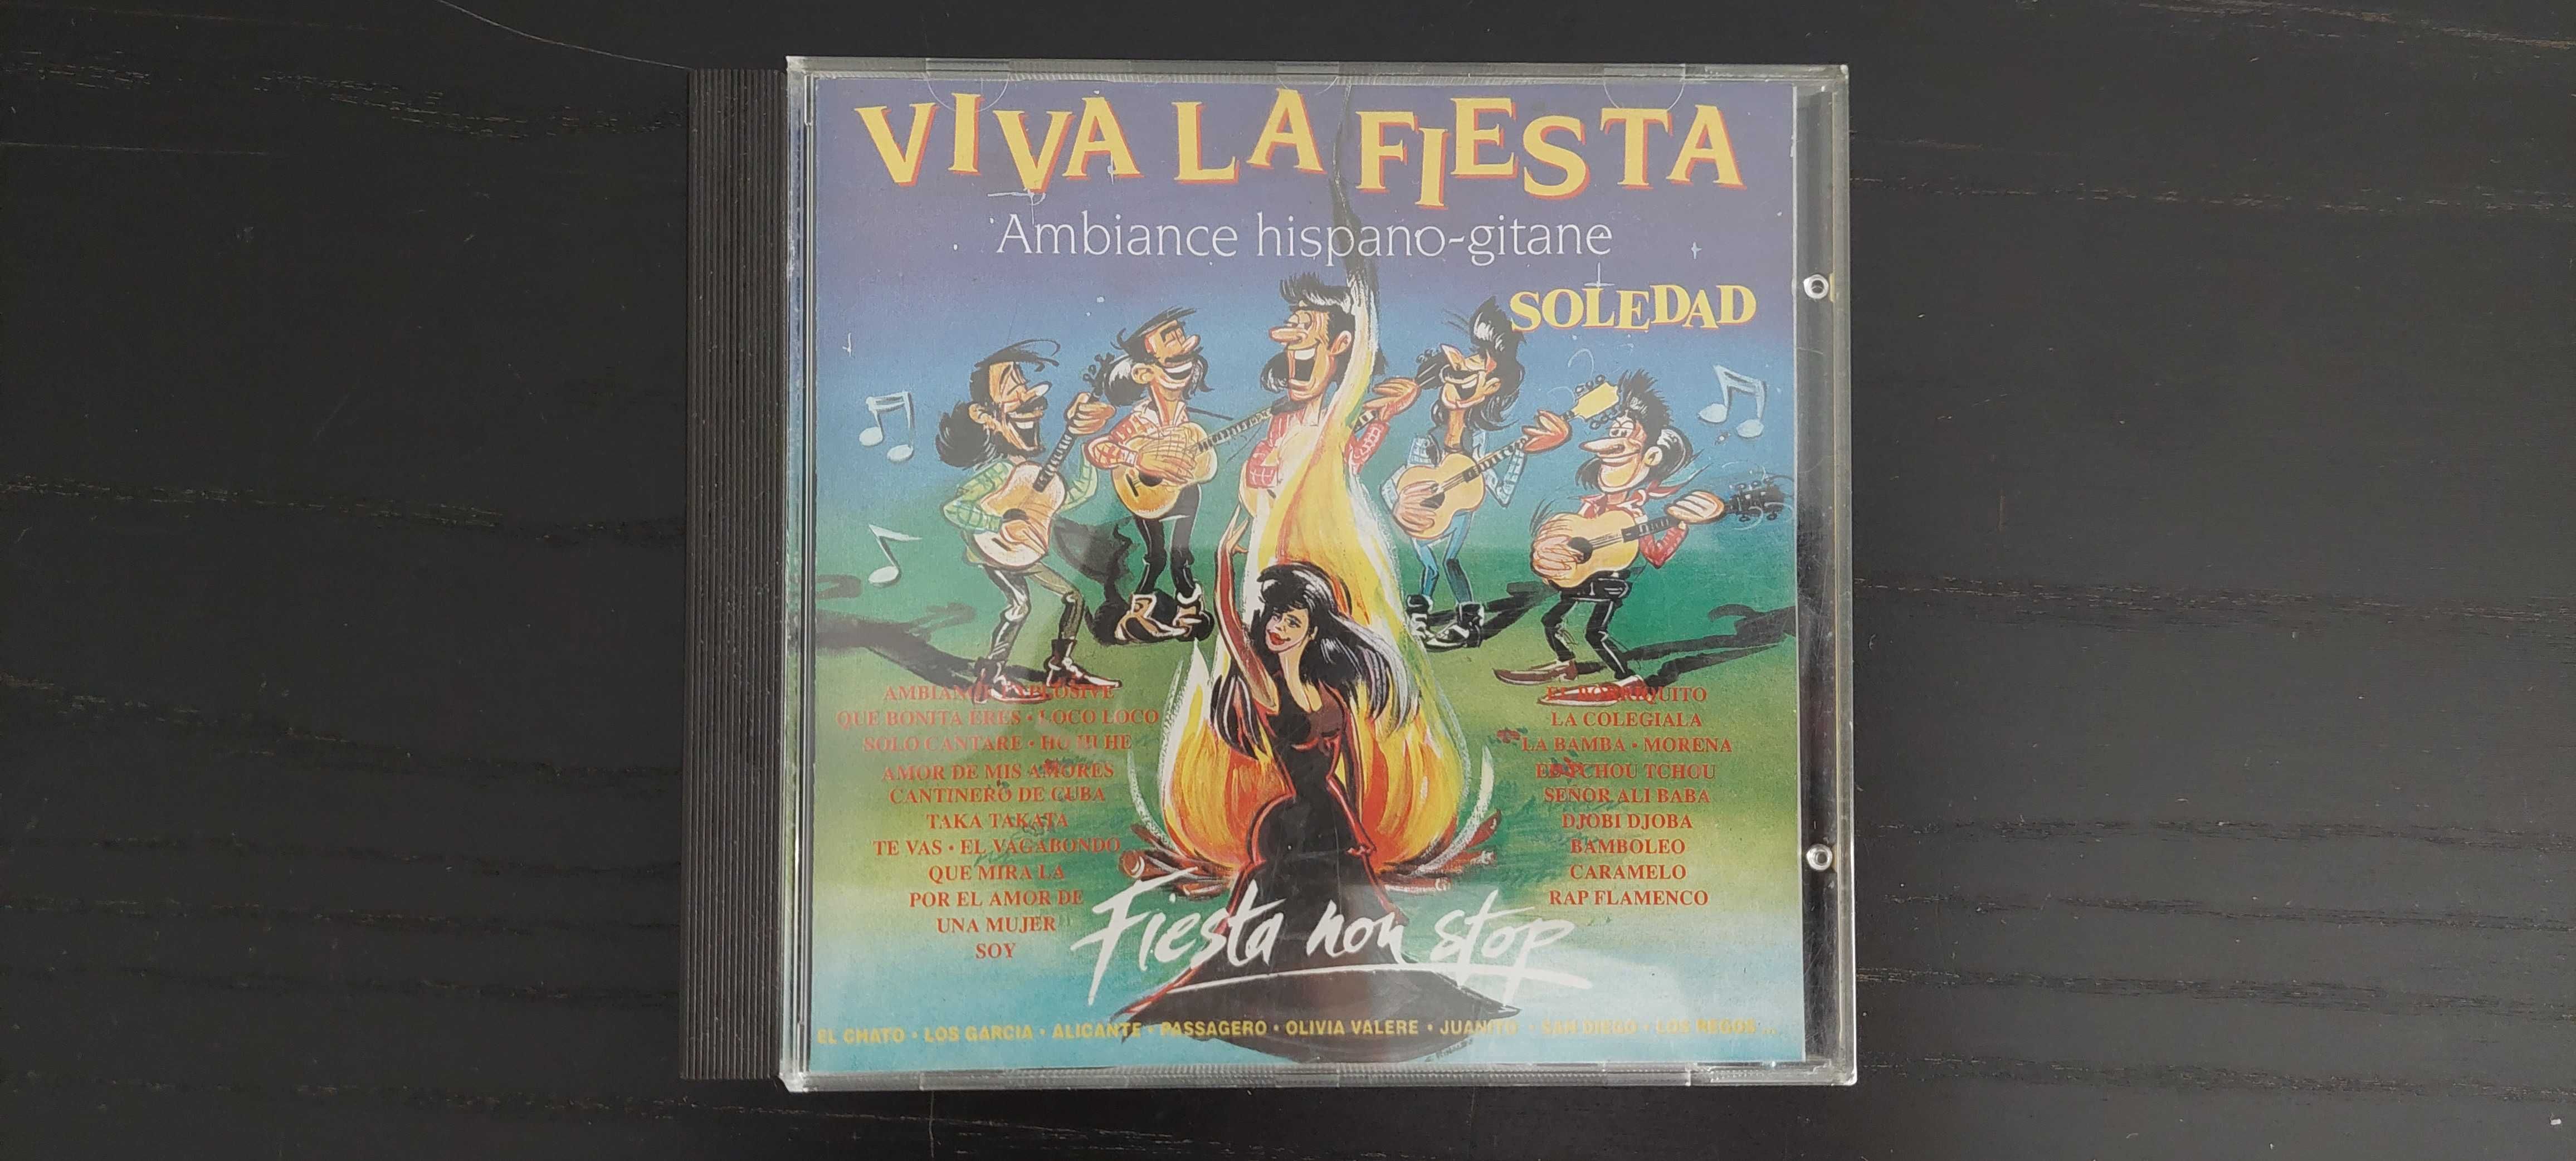 CD Original Viva la fiesta